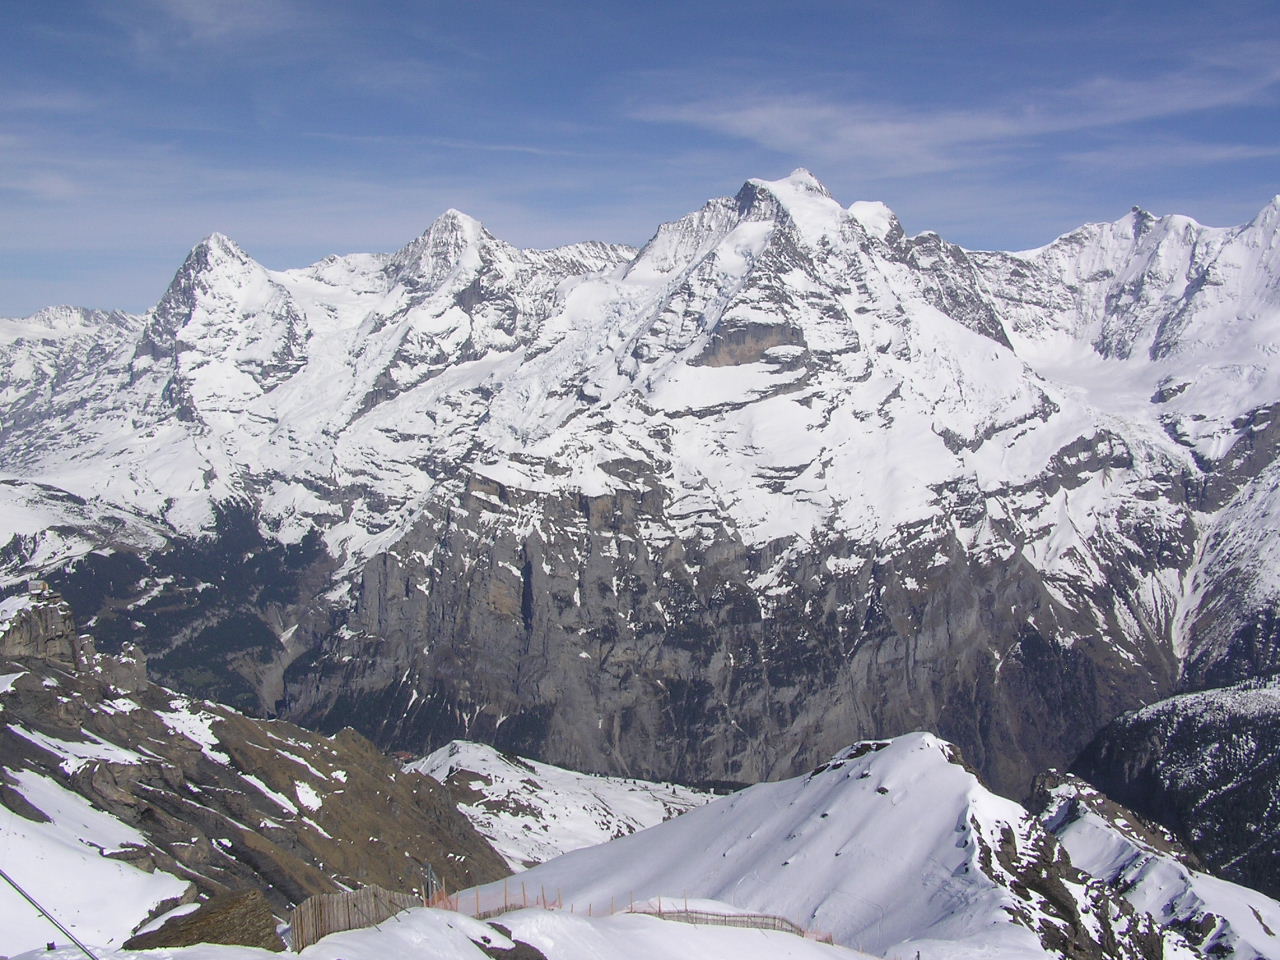 http://4.bp.blogspot.com/-KWP3-xyV-3I/T35LAyO8D_I/AAAAAAAAB-A/atsJFnP4iWM/s1600/Swiss+Alps+Mountain.JPG